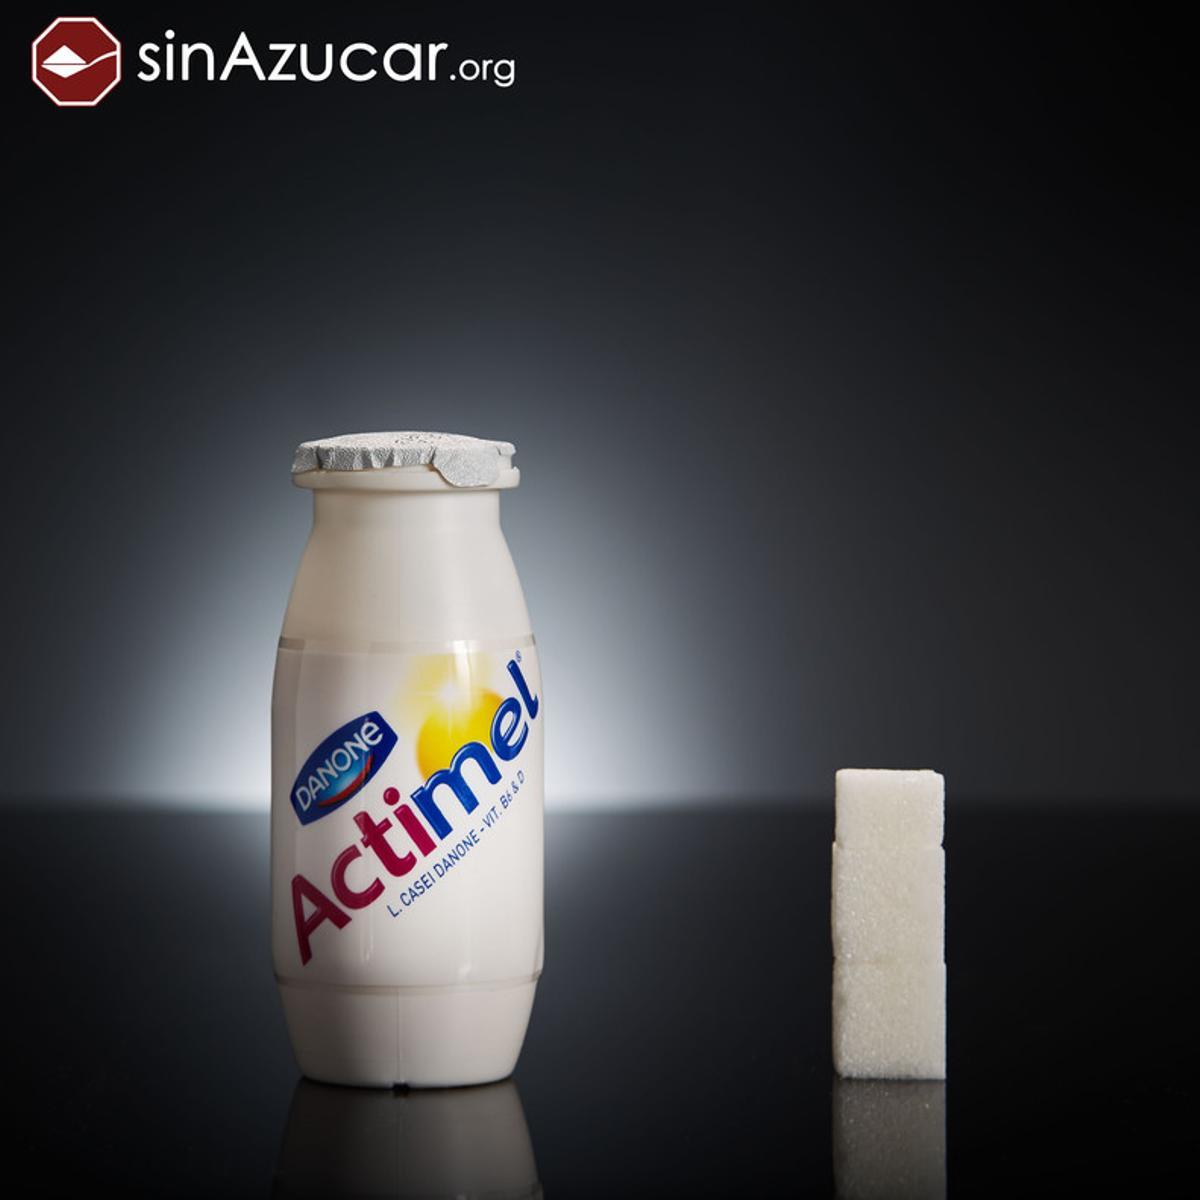 1 botellita de Actimel tiene 11,5 gr de azúcar, casi 3 terrones.